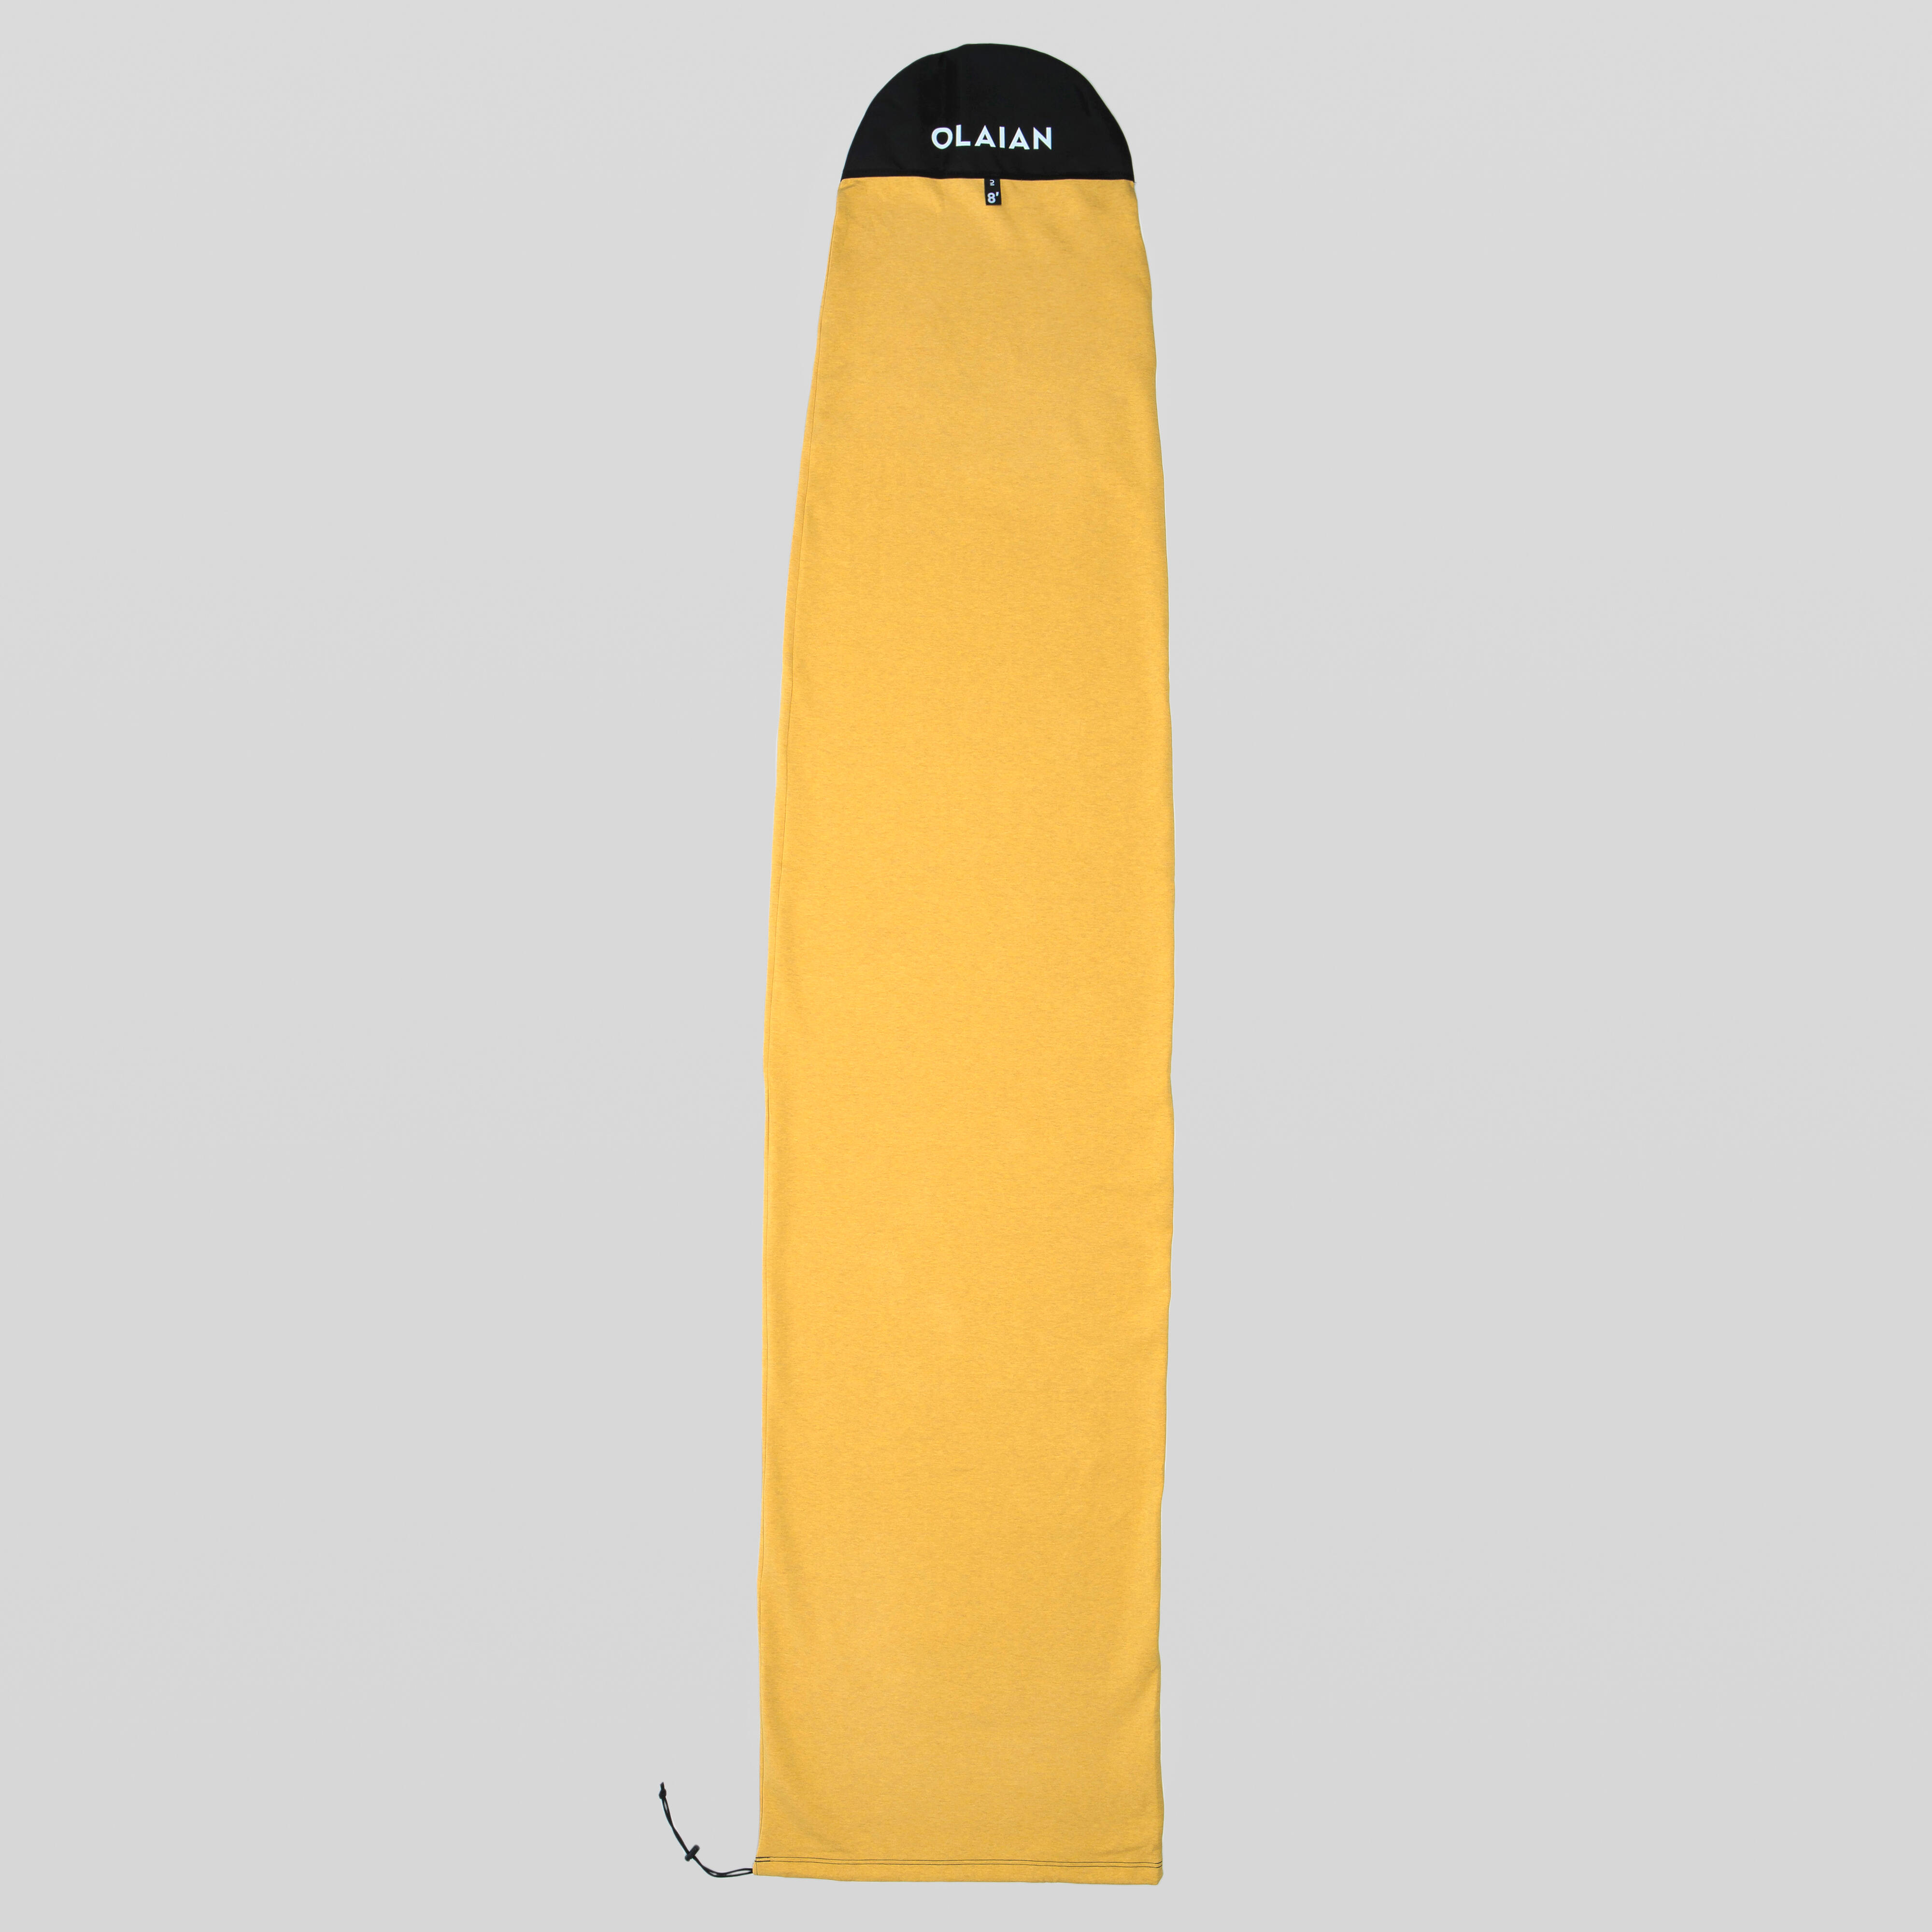 housse chaussette surf pour planche taille maxi 8'2'' - olaian